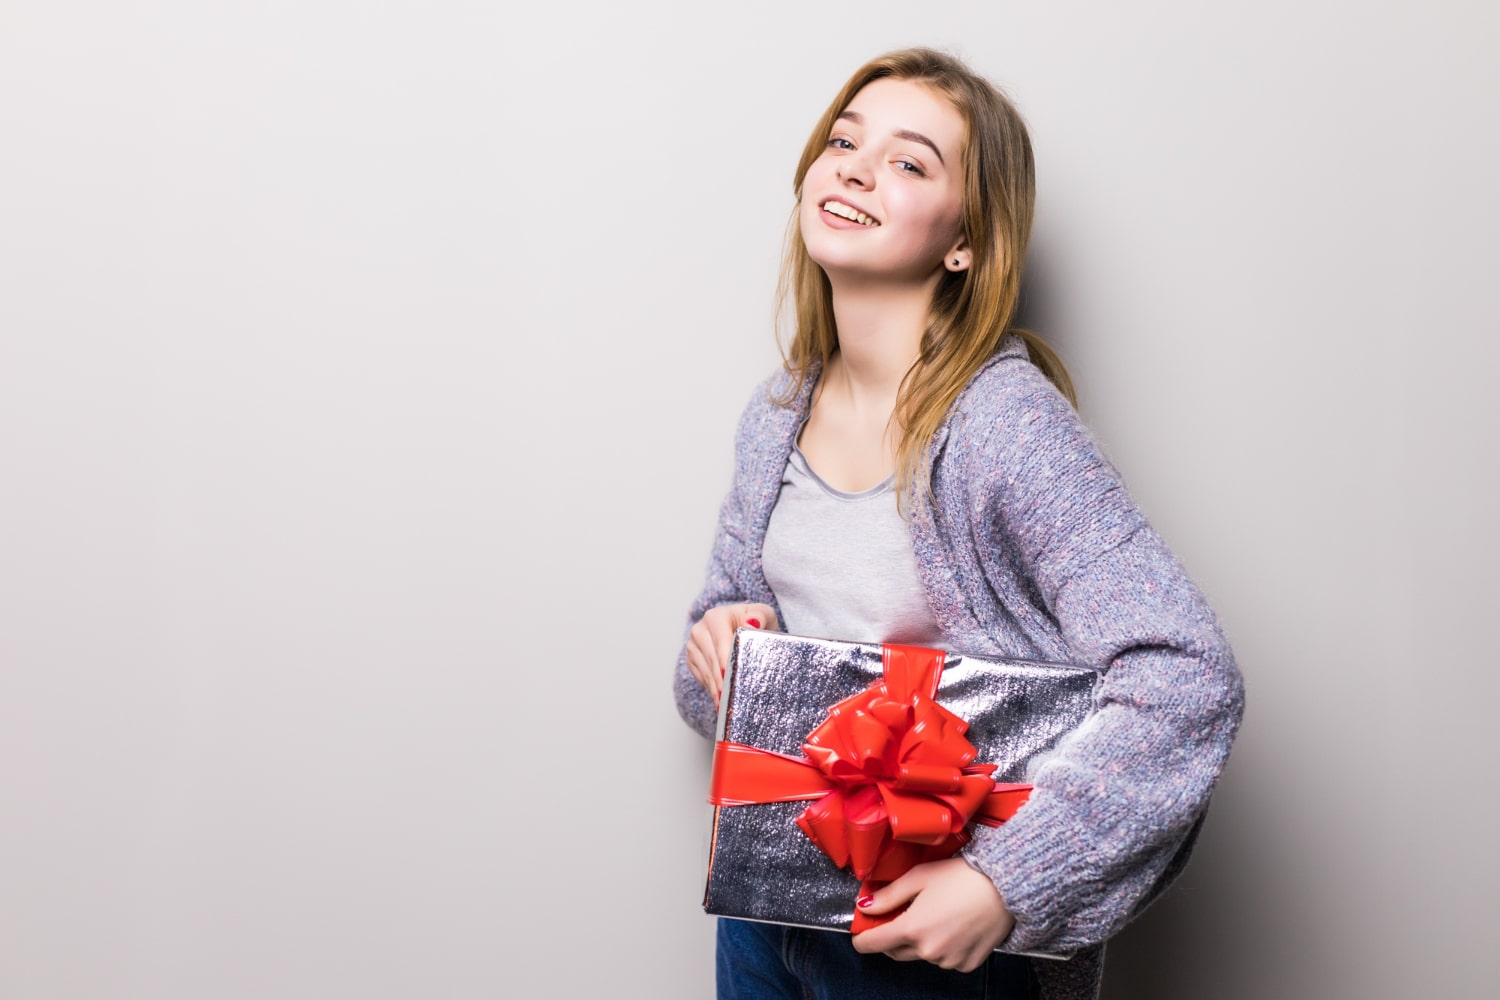 ruw Touhou bonen Cadeaus voor 14 jarige meiden; wat geef jij cadeau? | 123 Cadeau idee.nl;  Cadeautips voor alle gelegenheden!